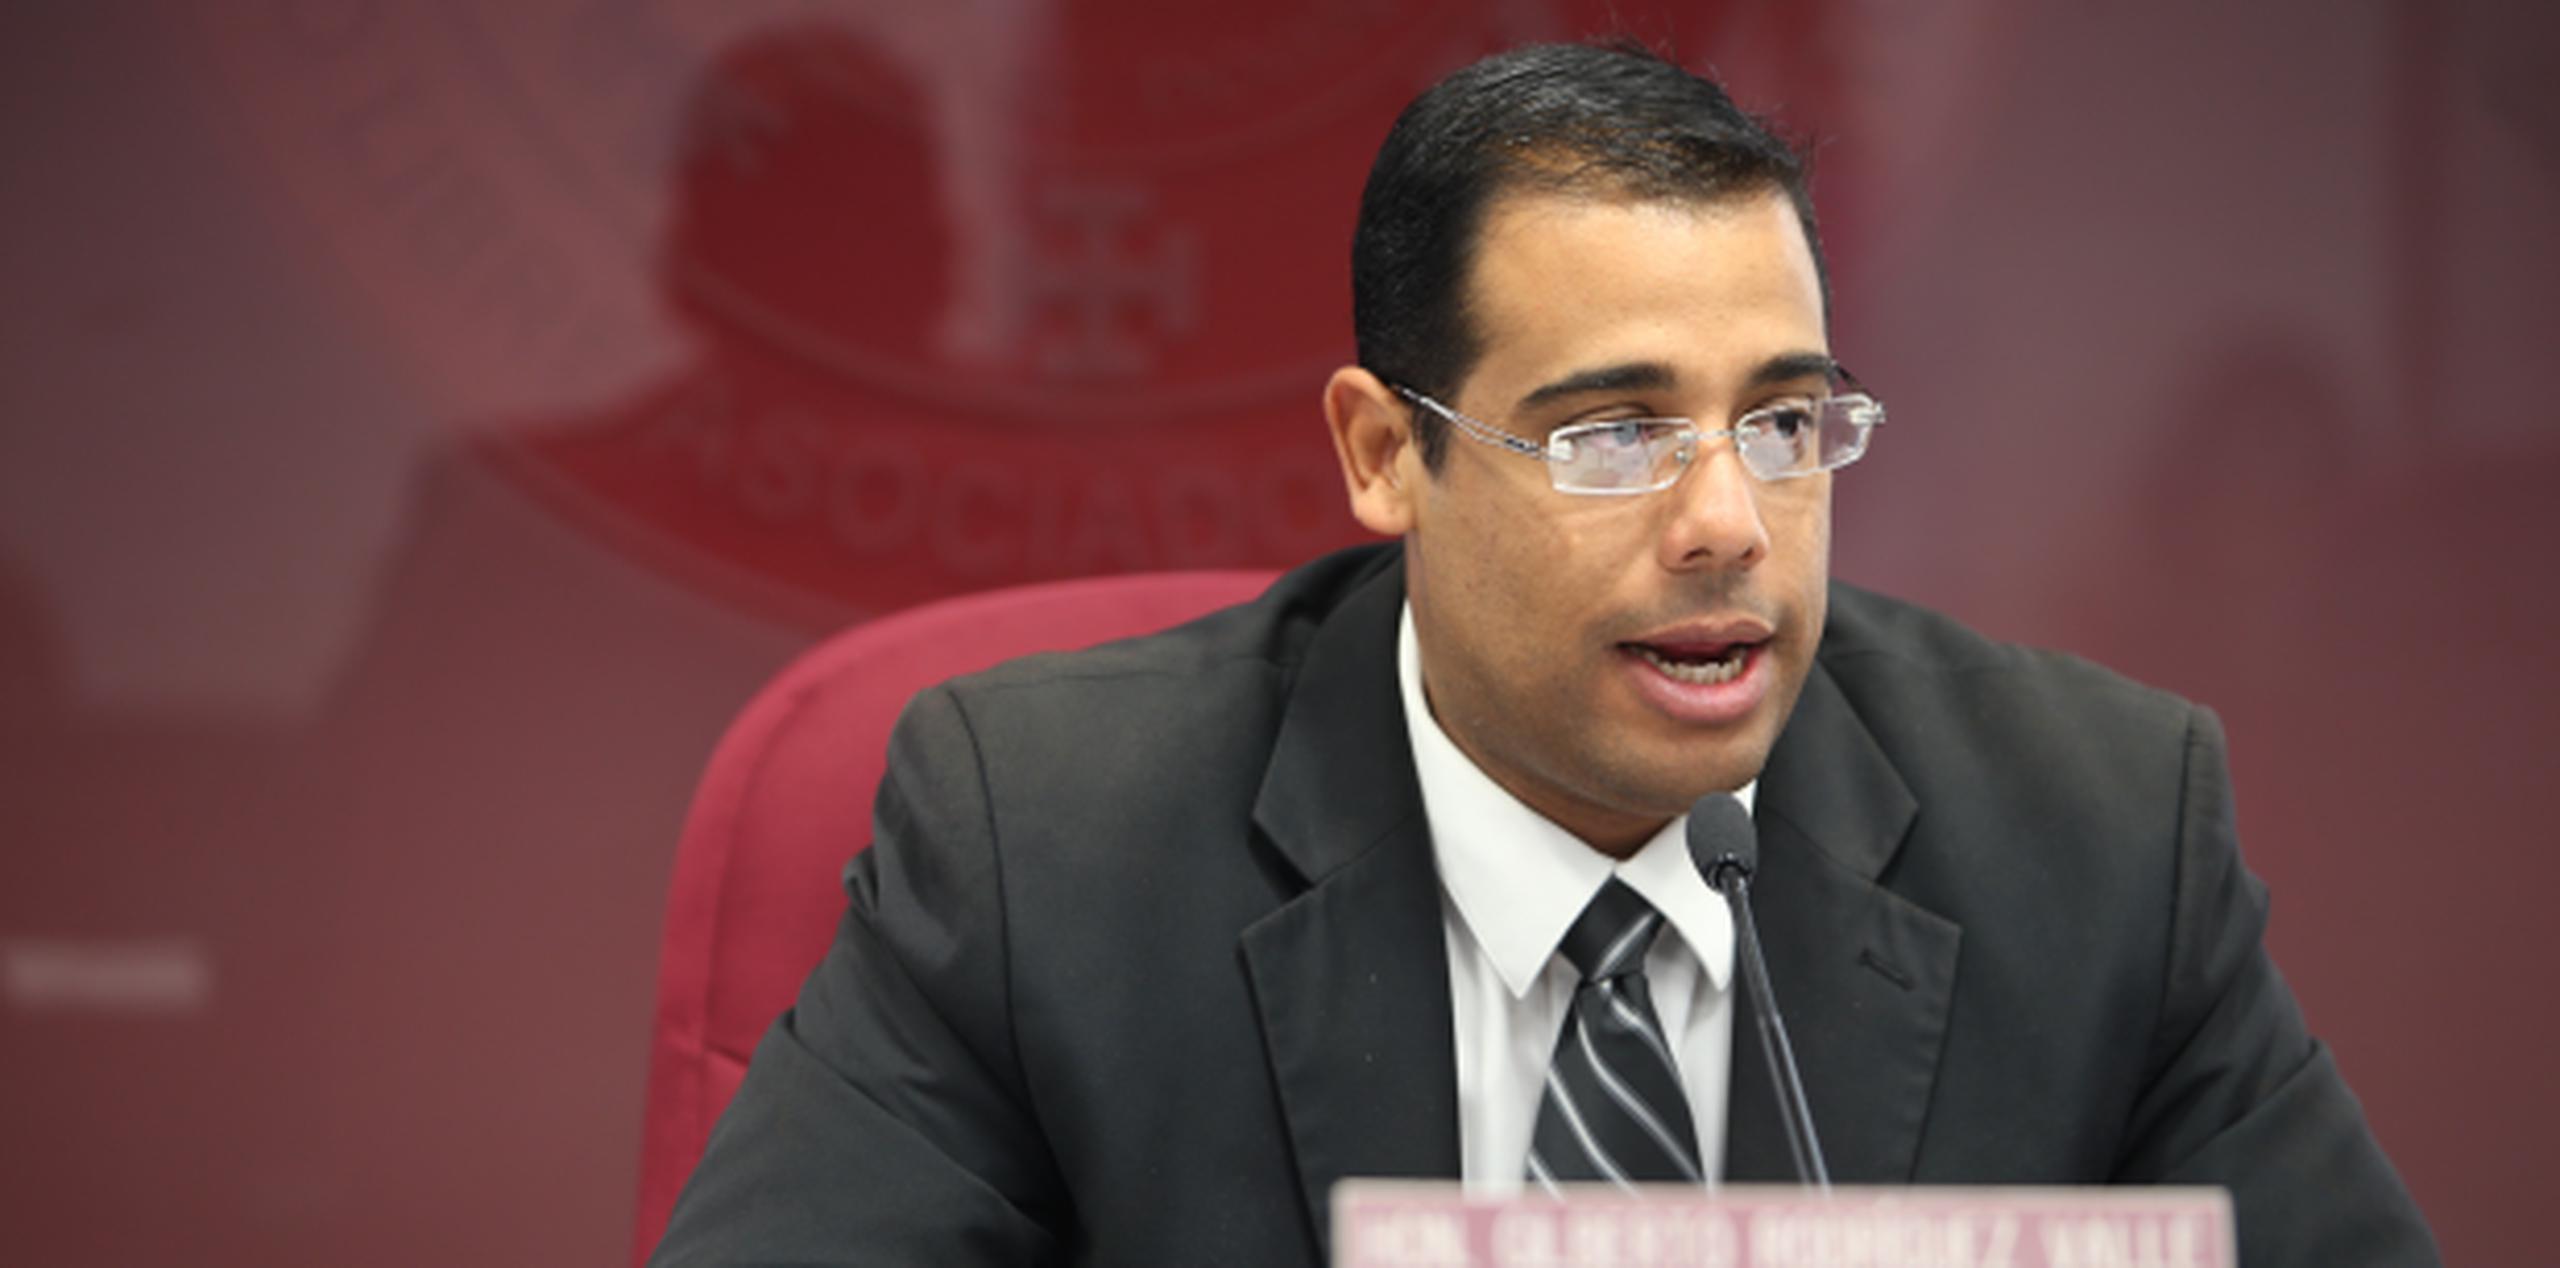 El senador Gilberto Rodríguez Valle, quien es el propulsor de la iniciativa, indicó que al momento se desconoce la cantidad de "biobancos" en Puerto Rico. (Archivo/teresa.canino@gfrmedia.com)